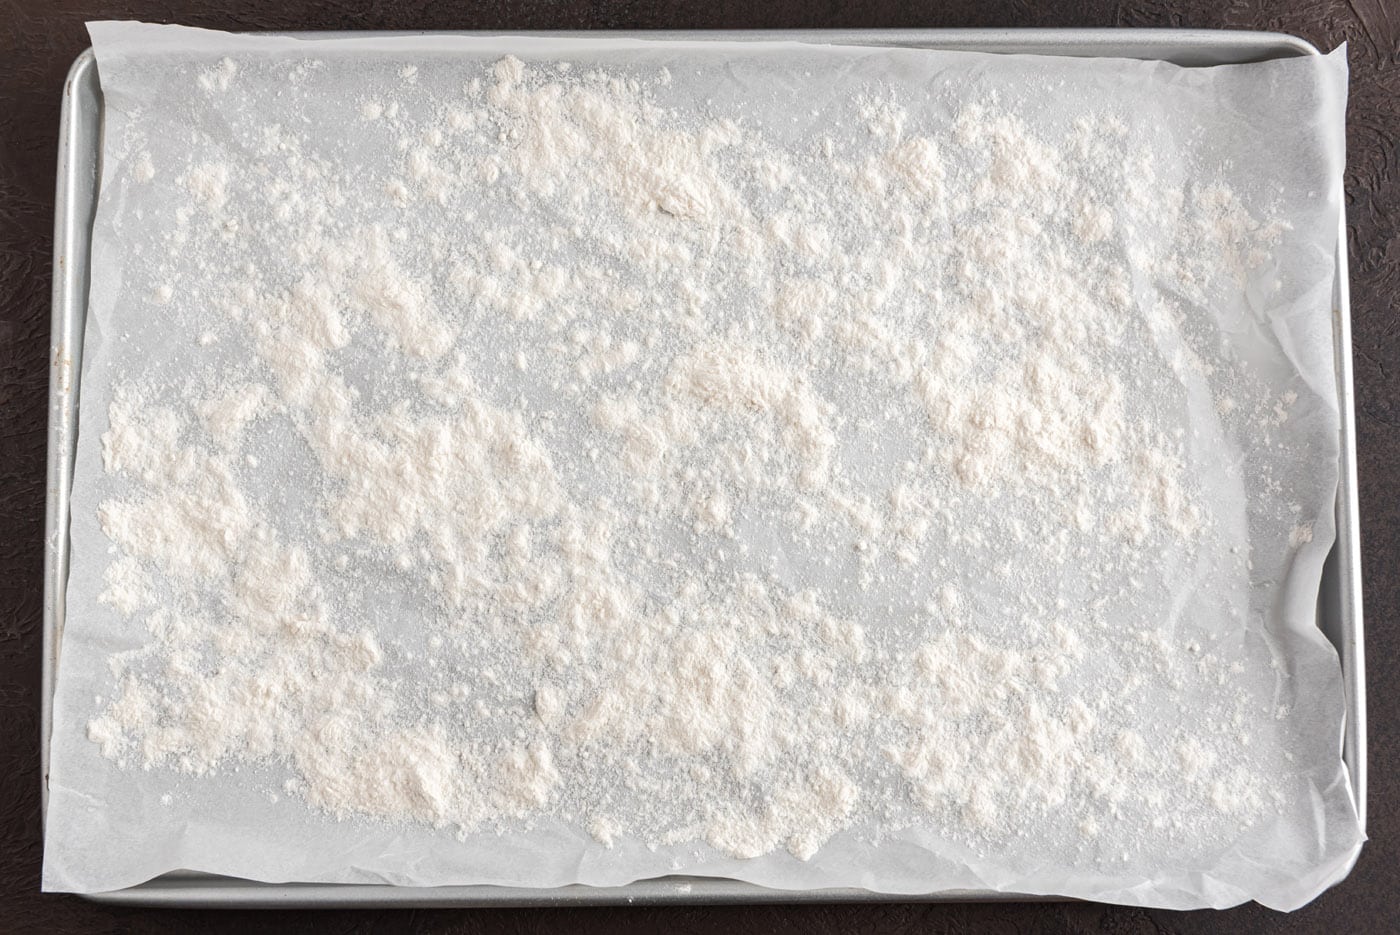 flour work surface